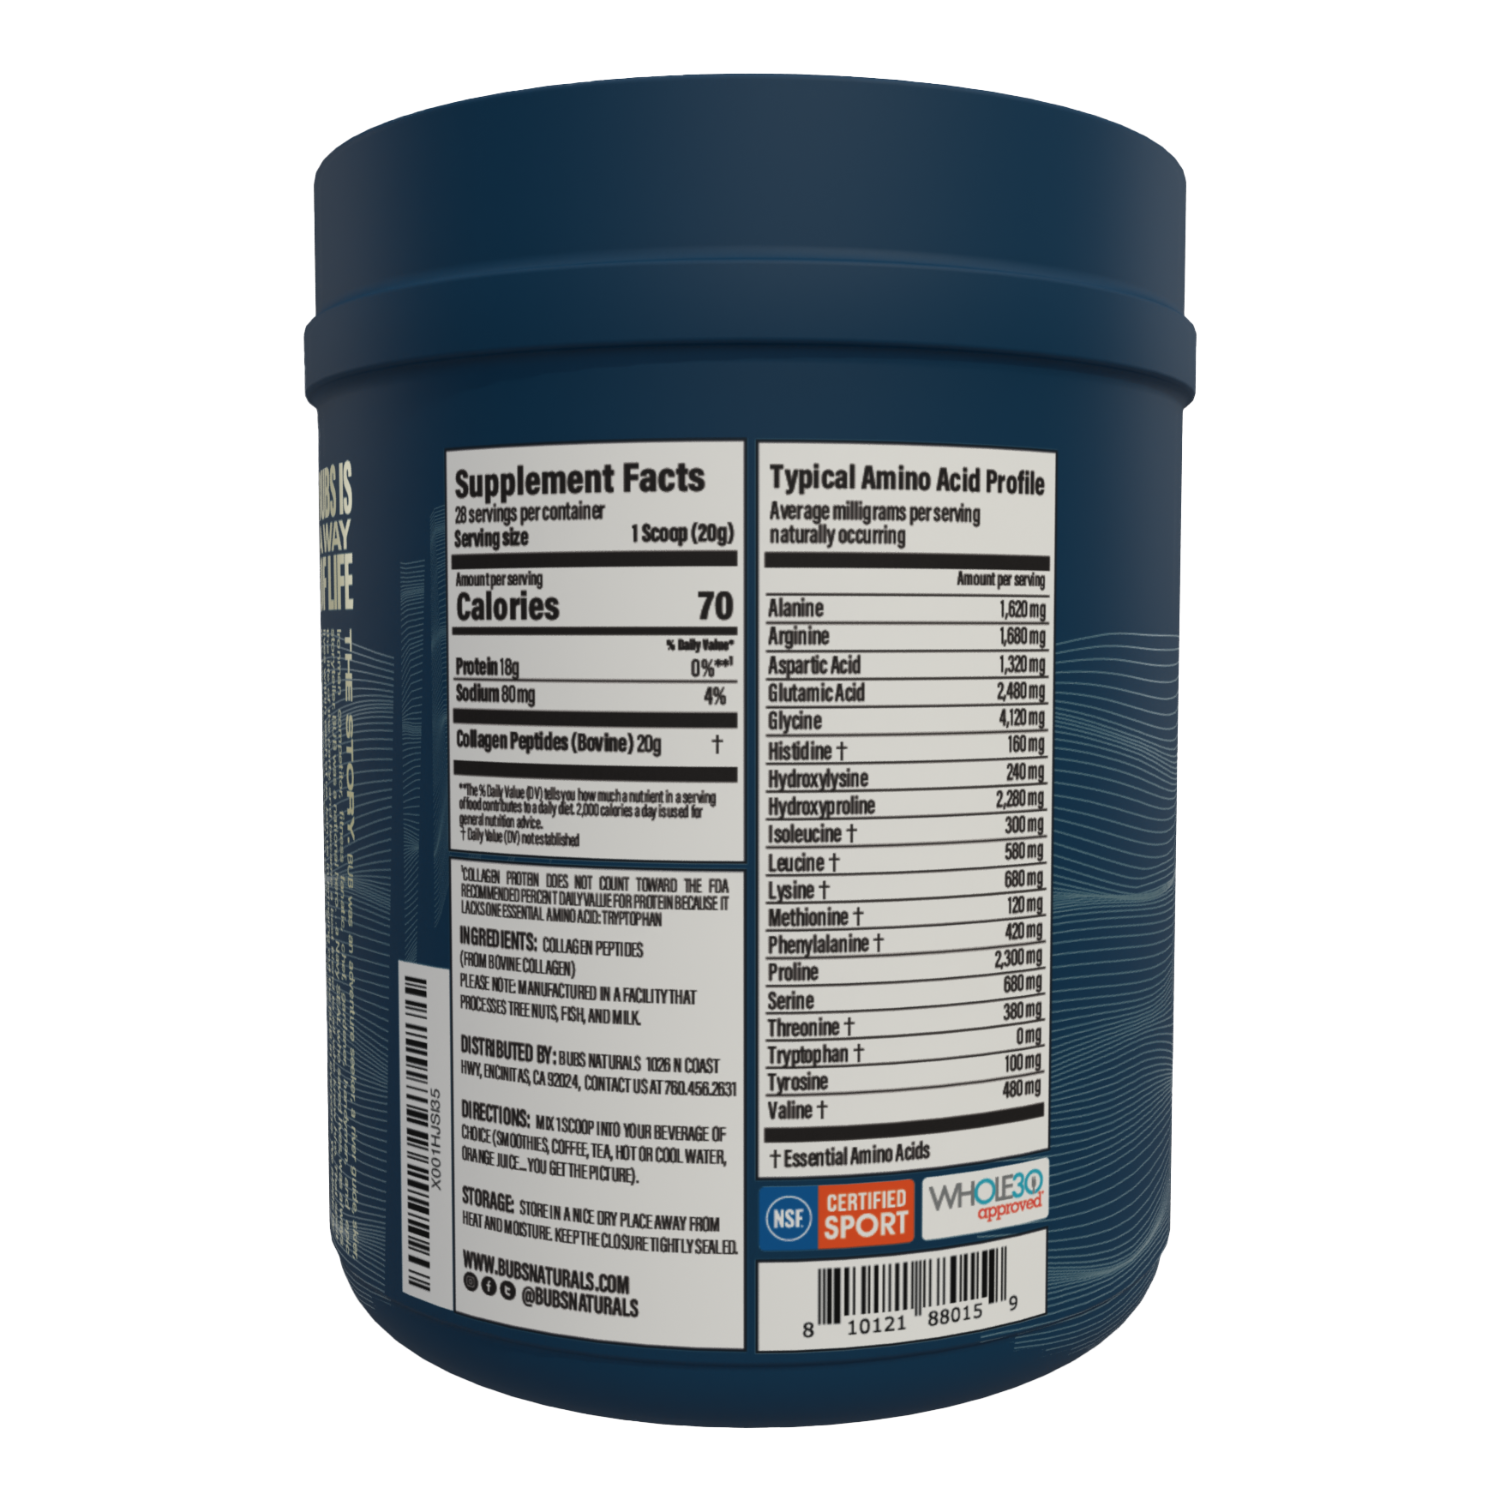 BUBS Naturals Unflavored Collagen Peptides 20 oz tub, Label